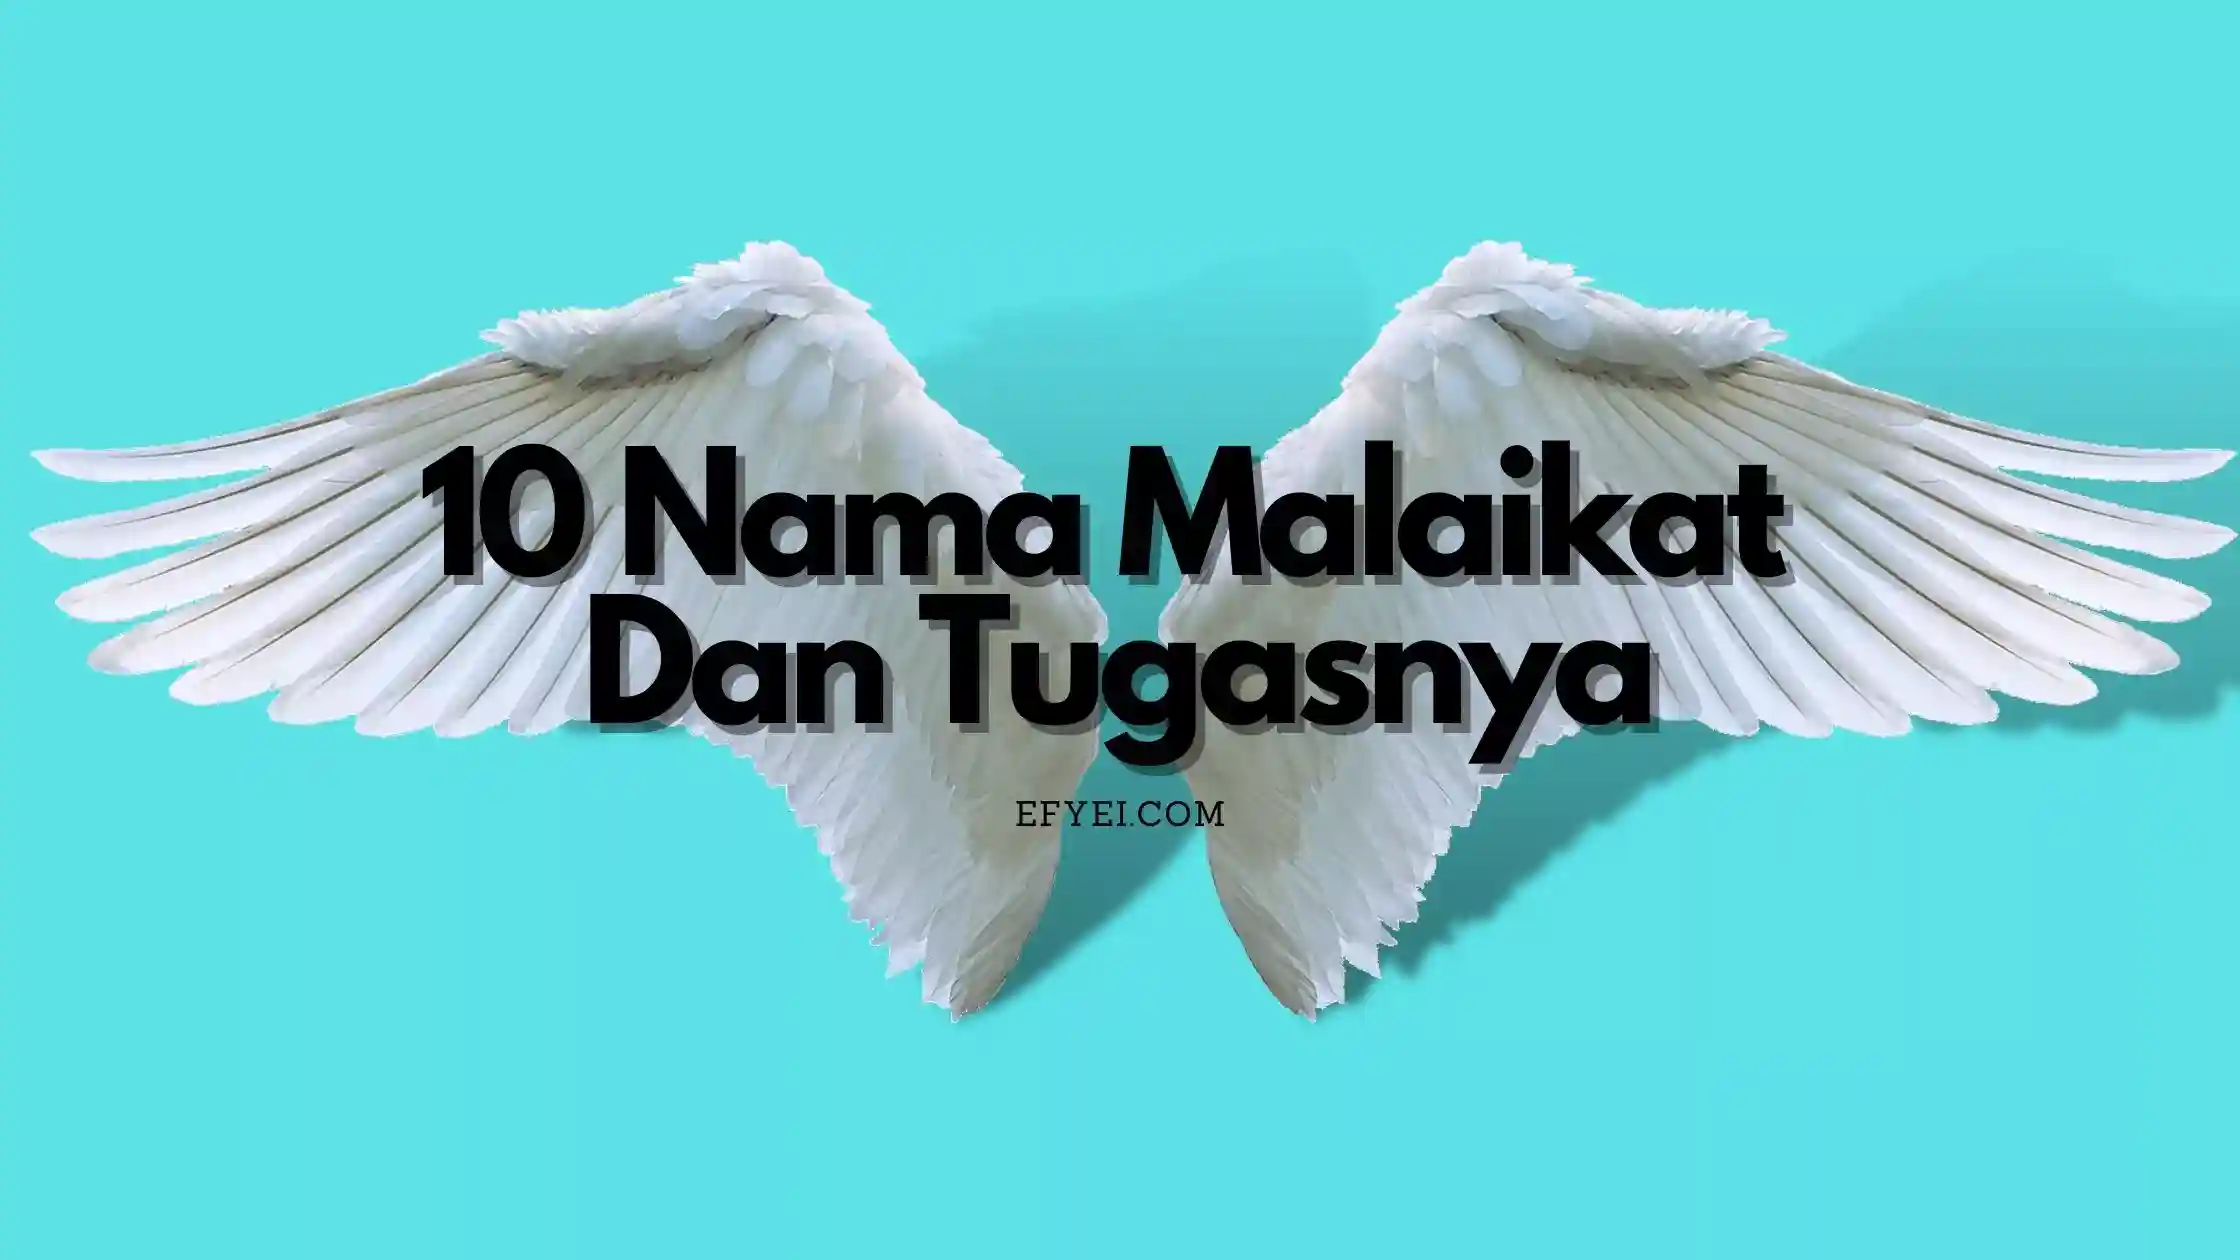 10 Nama Malaikat Dan Tugasnya